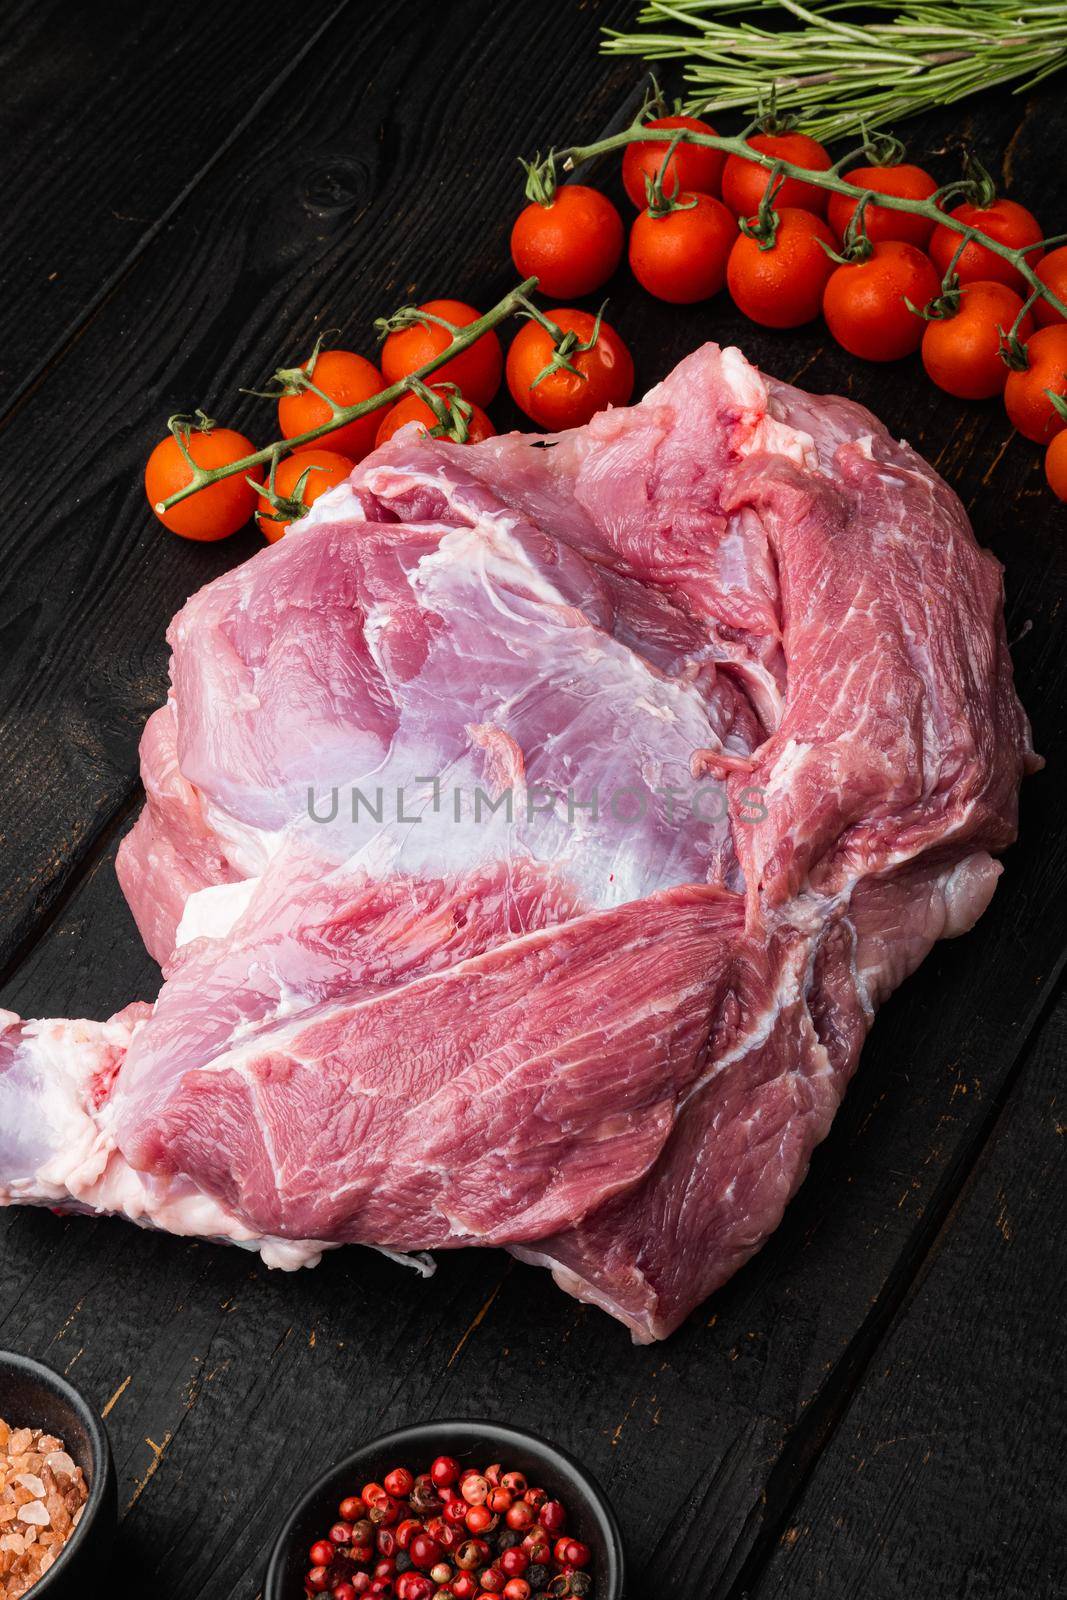 Pork meat ingredients set, on black wooden table background